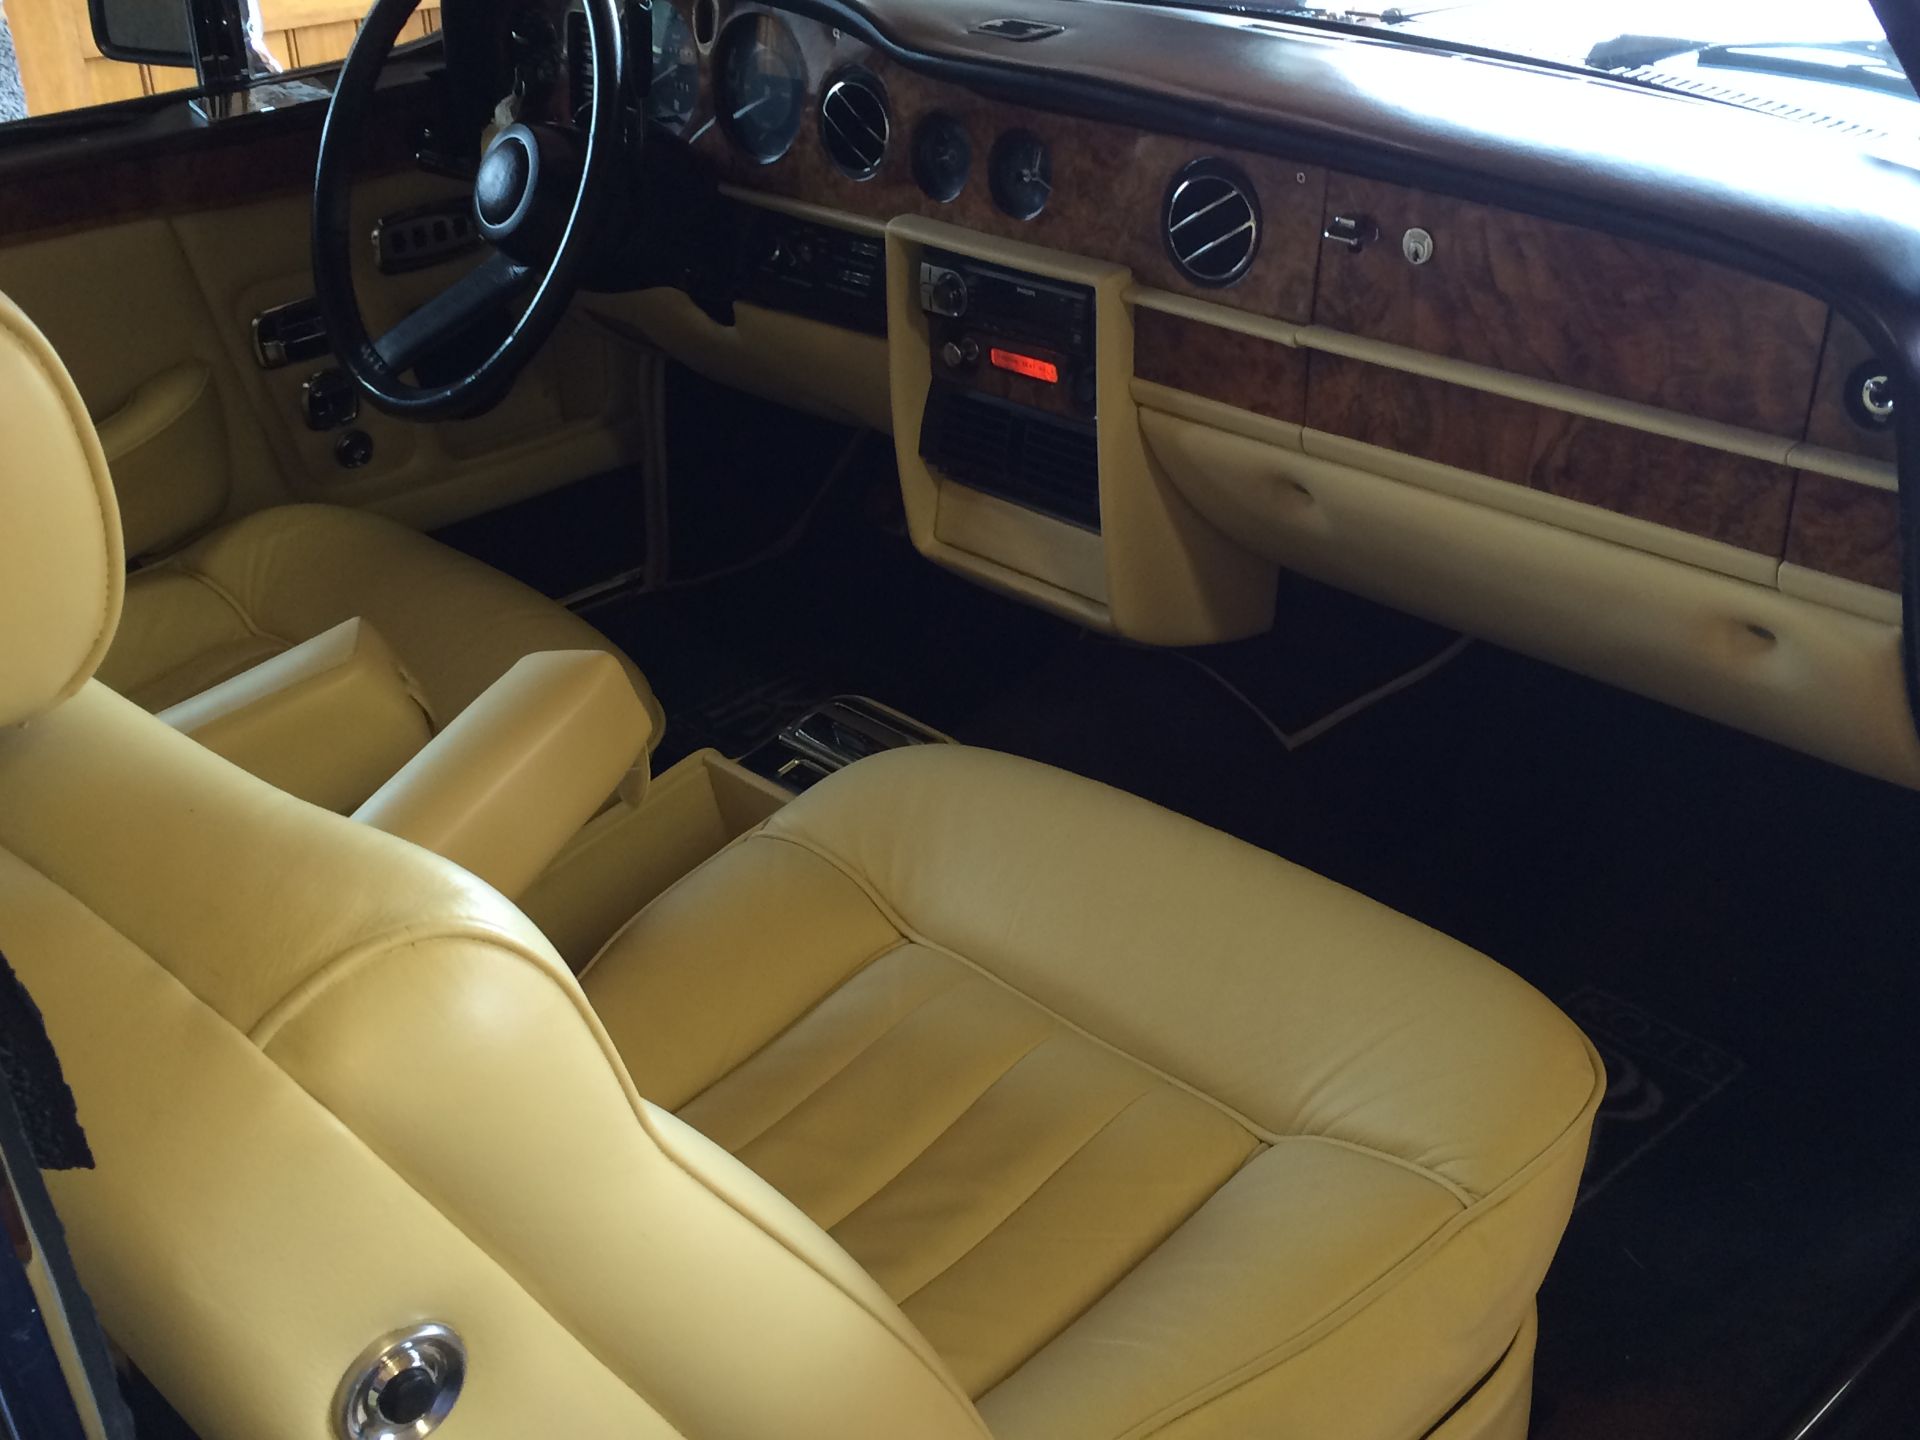 1977 Rolls Royce Corniche II - Image 7 of 7